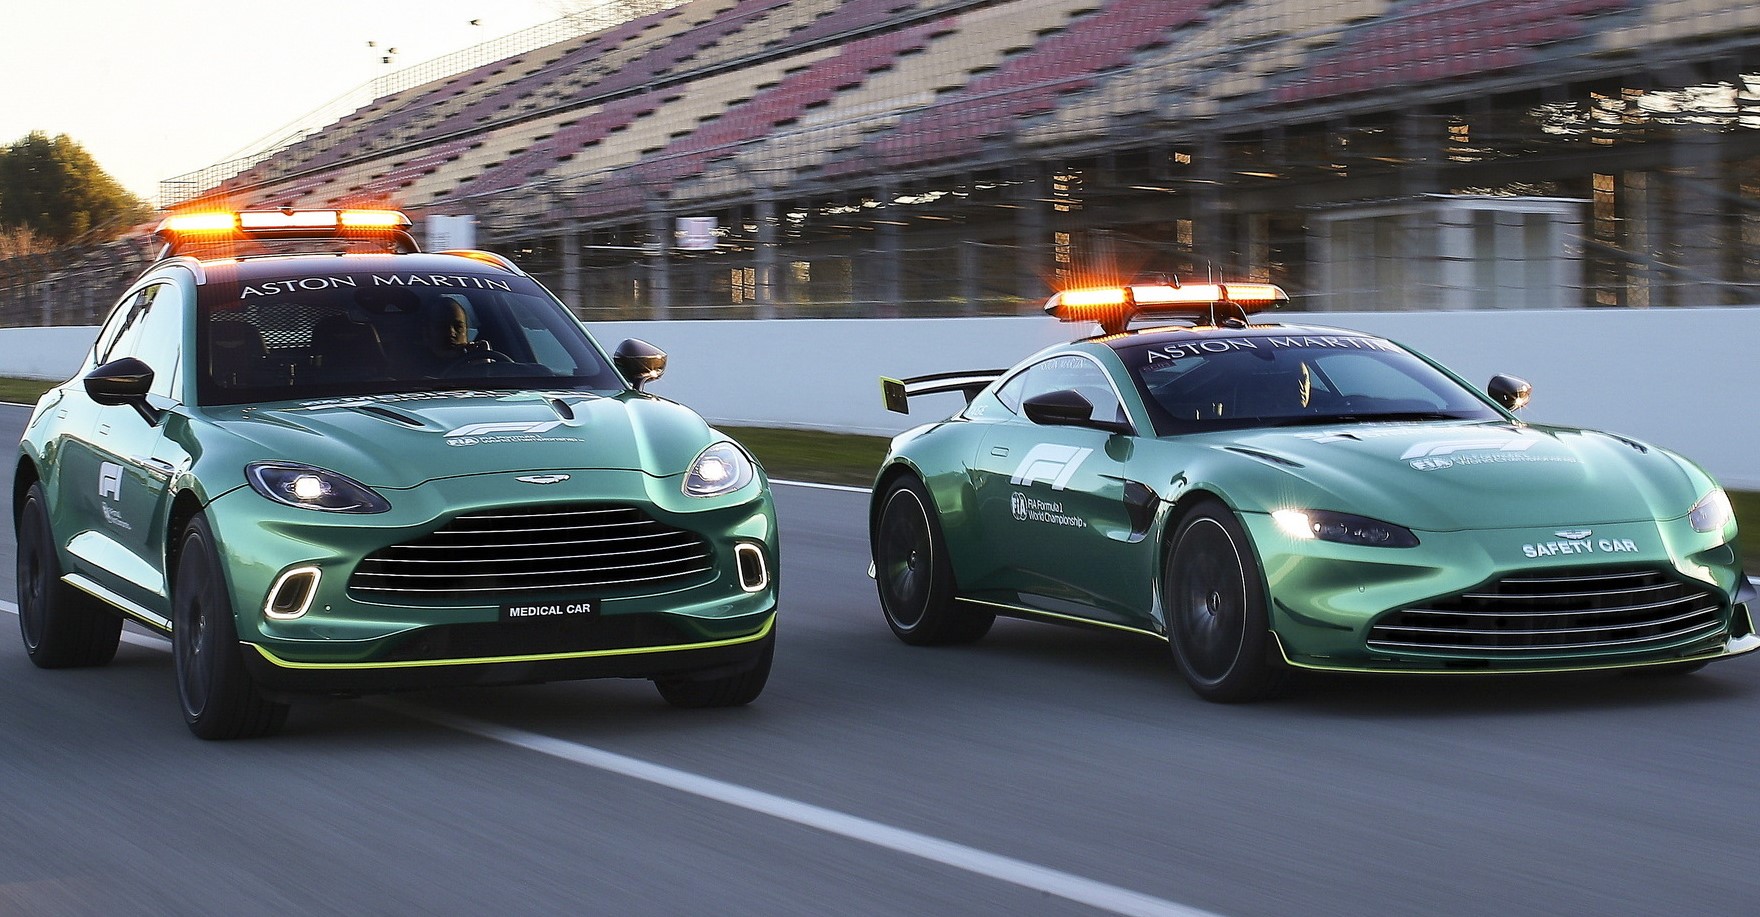 Saudi Arabia Fund buys 17% stake in Aston Martin